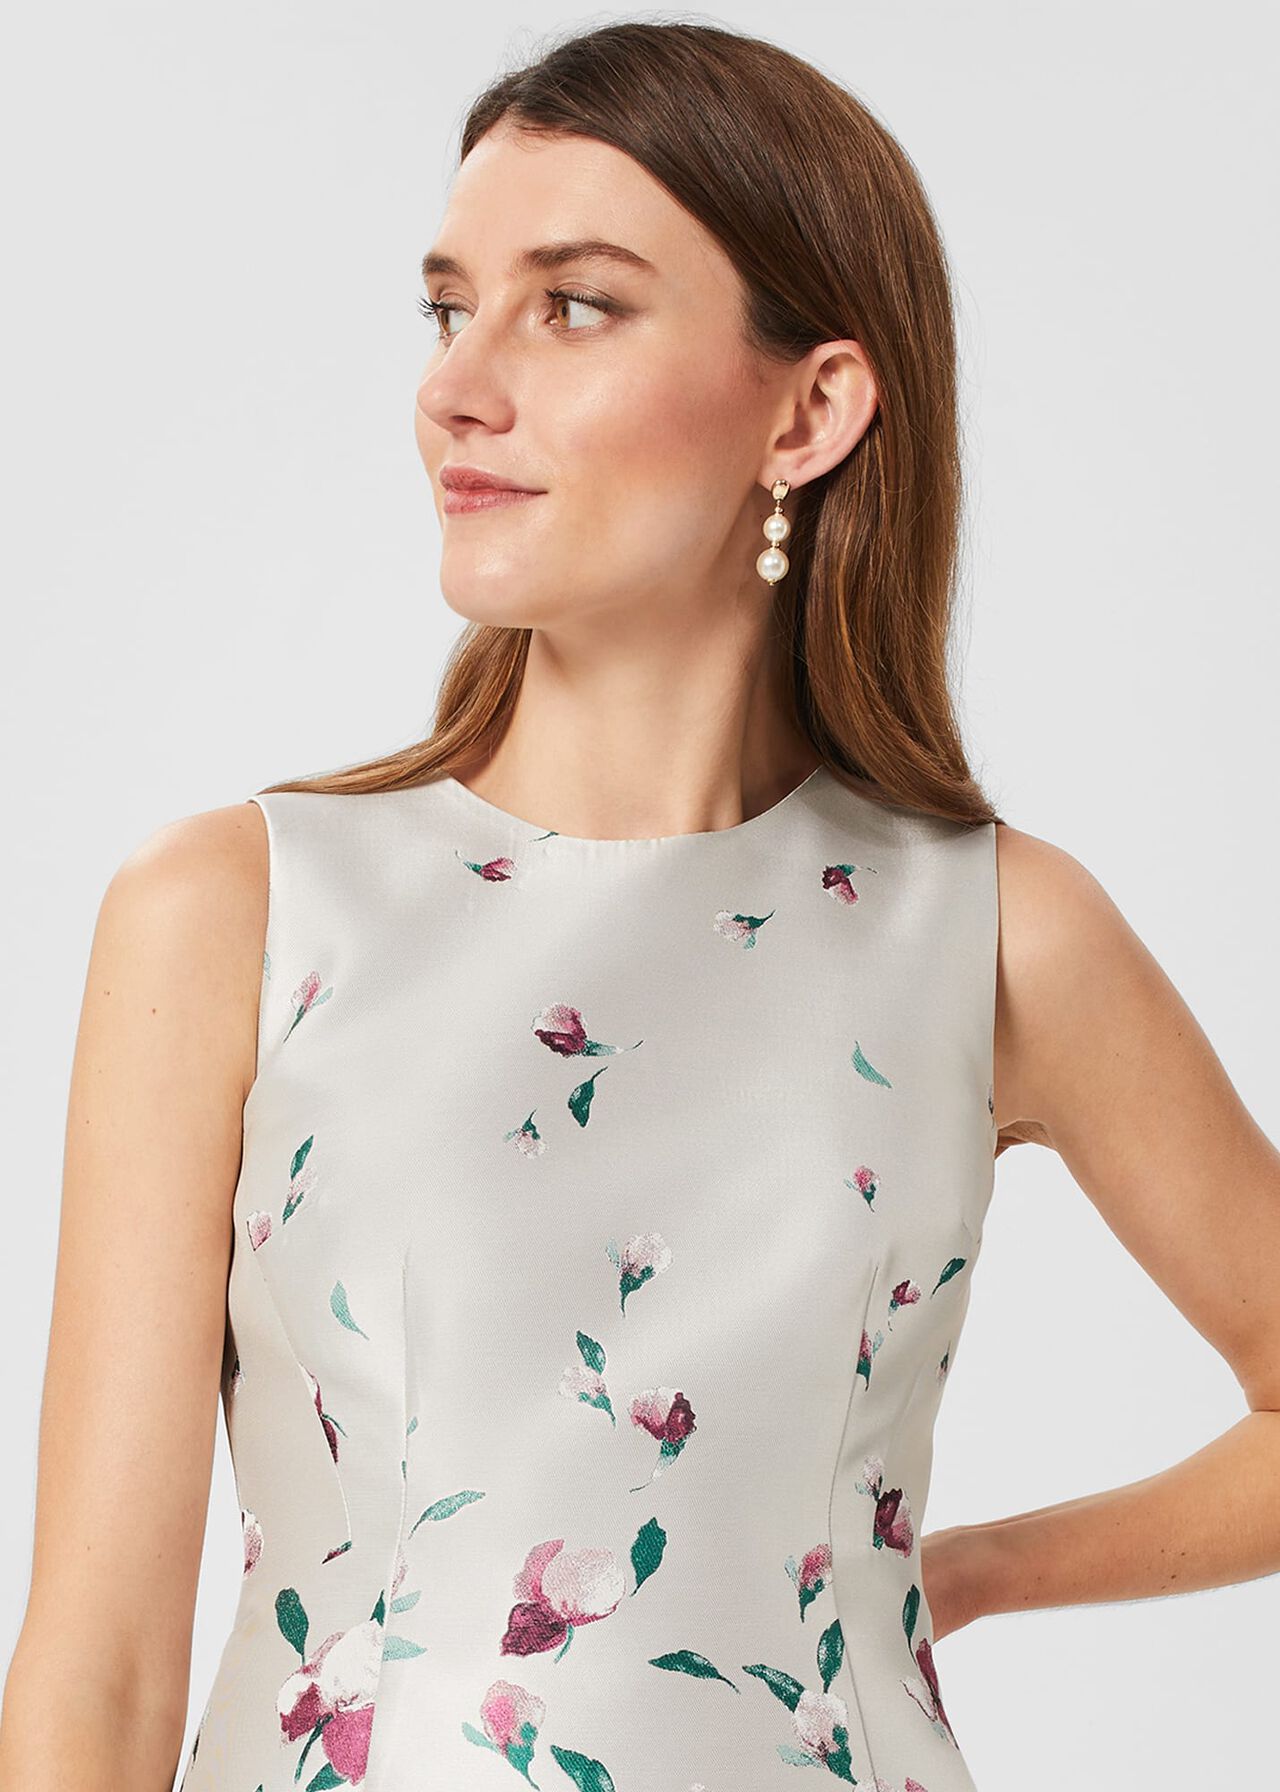 Gwen Floral Jacquard Dress, Oyster Multi, hi-res